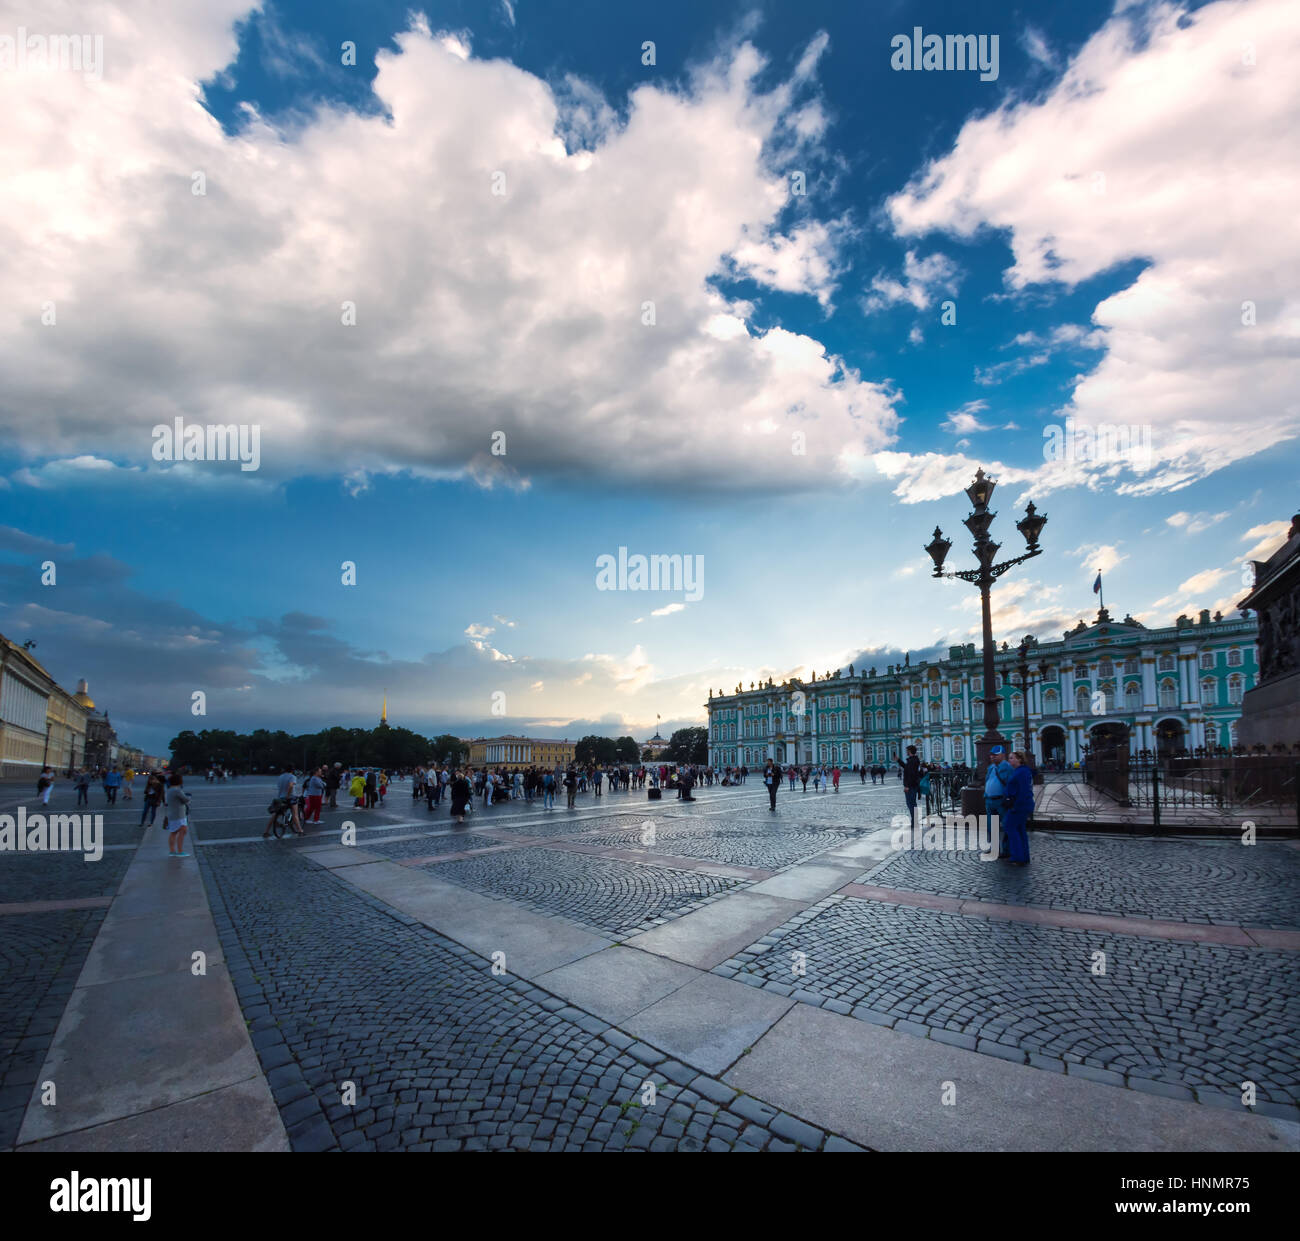 ST. PETERSBURG, Russia - 15 luglio 2016: magia notte bianca nella Piazza del Palazzo a San Pietroburgo, Russia. Prese fisheye. Foto Stock